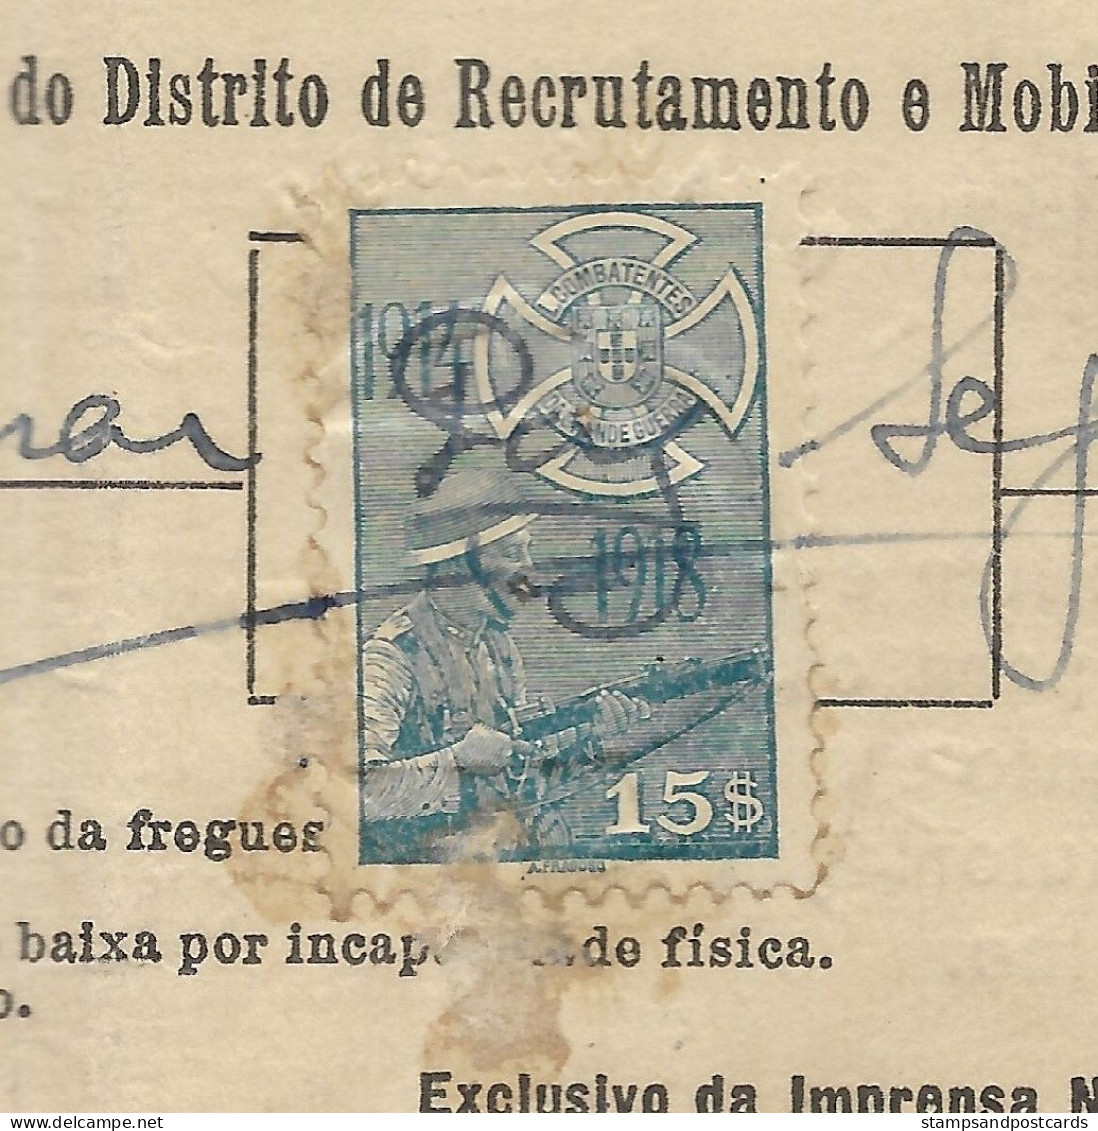 Portugal Timbre Fiscal Liga Dos Combatentes 15$ 1942 Revenue Stamp Militar Exemption - Briefe U. Dokumente